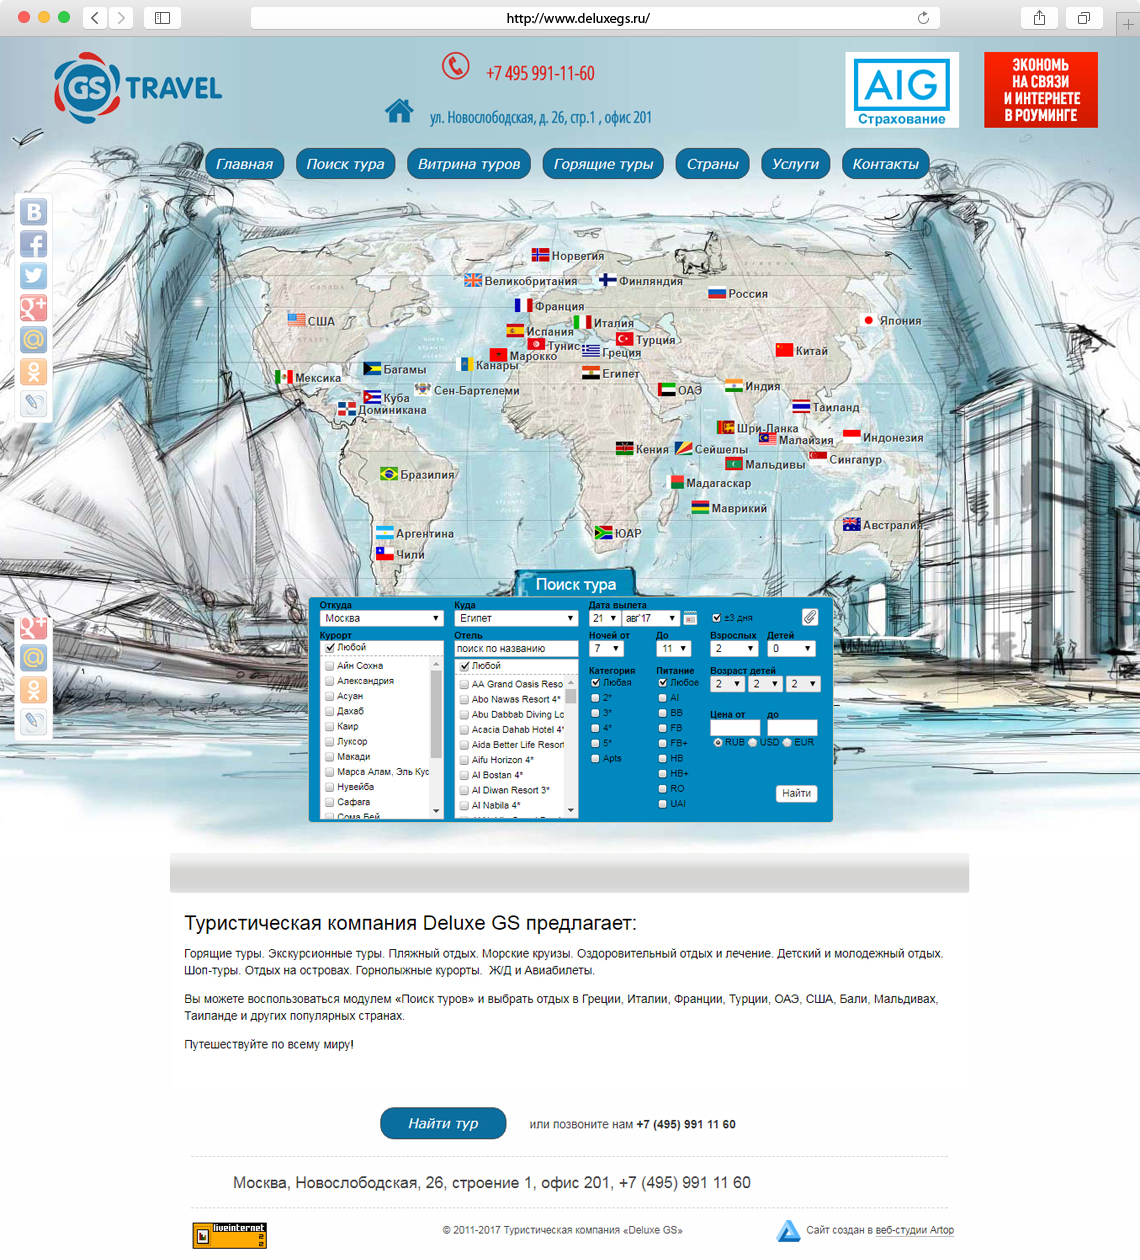 Homepage www.deluxegs.ru